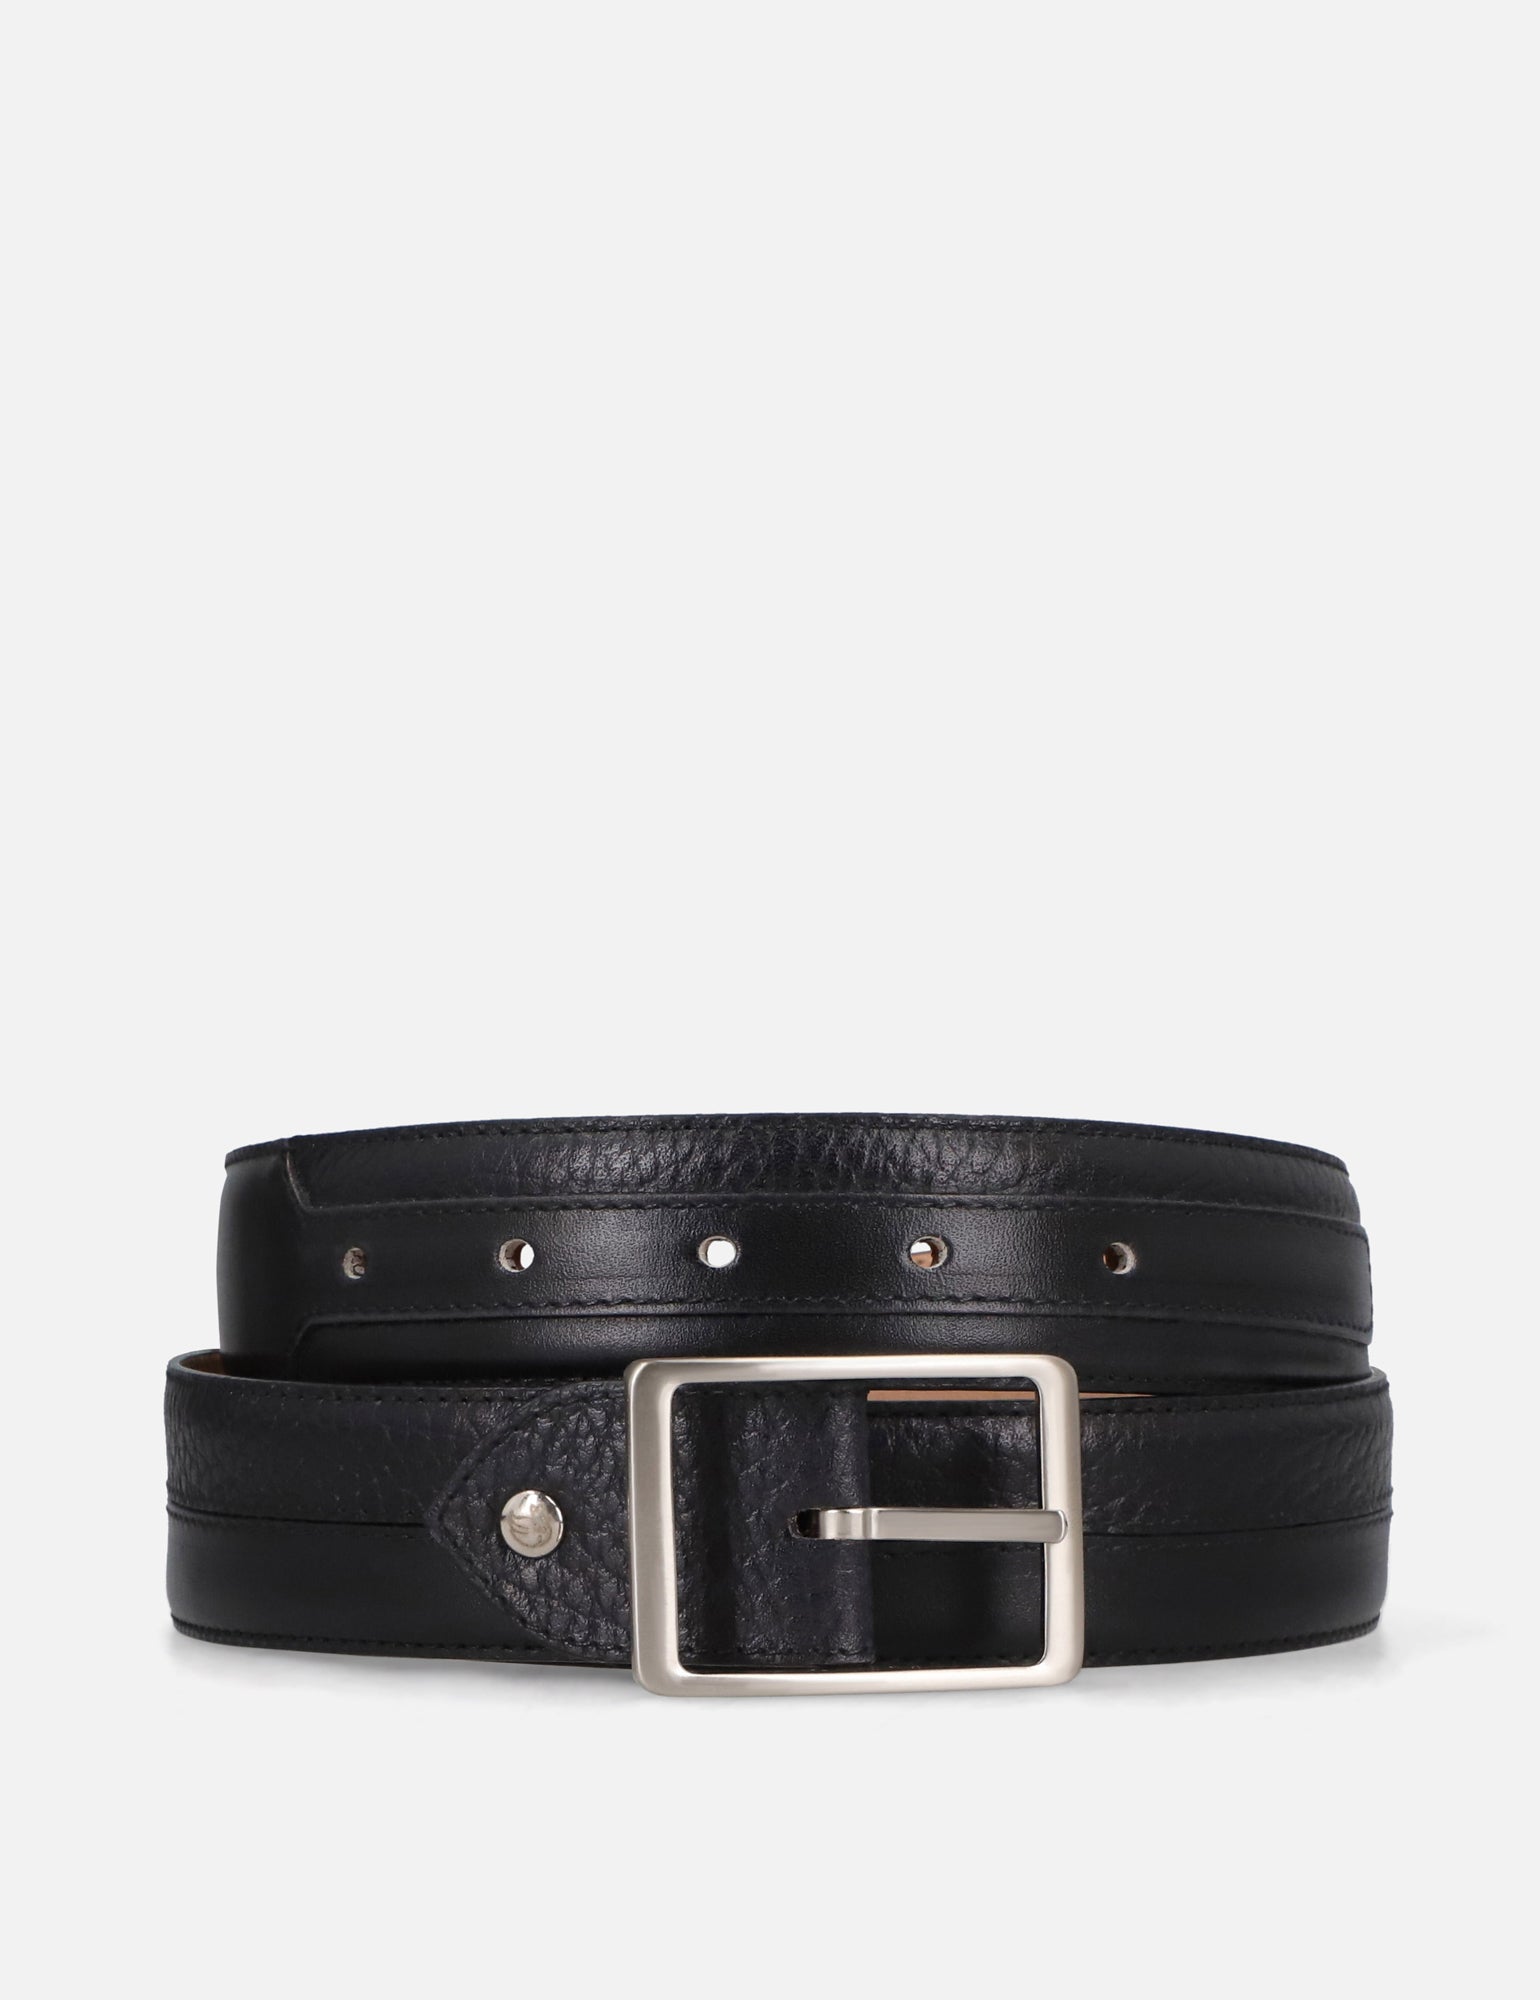 Cinturón en piel napa color negro